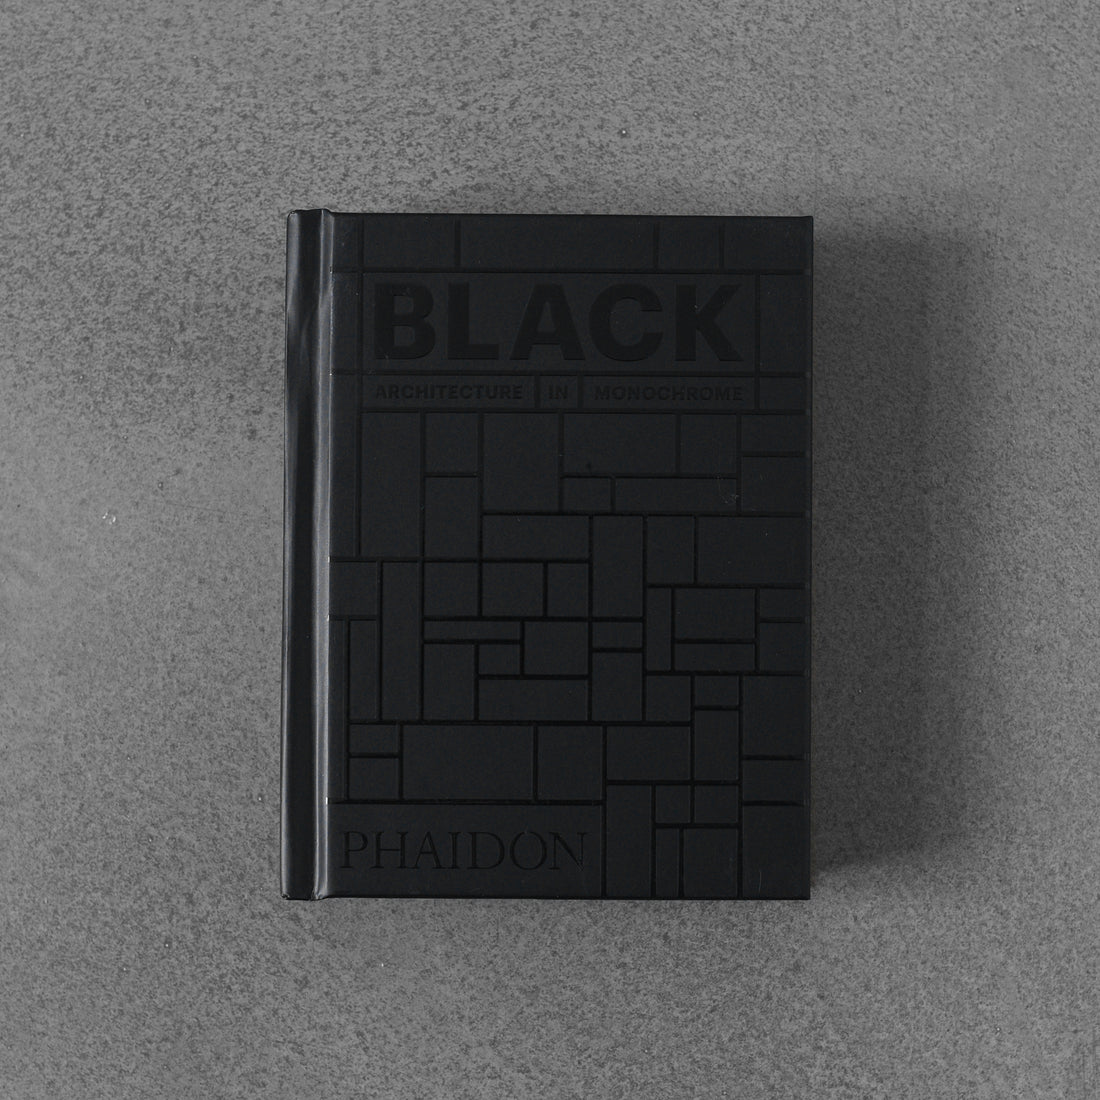 Black: Architecture in Monochrome MINI